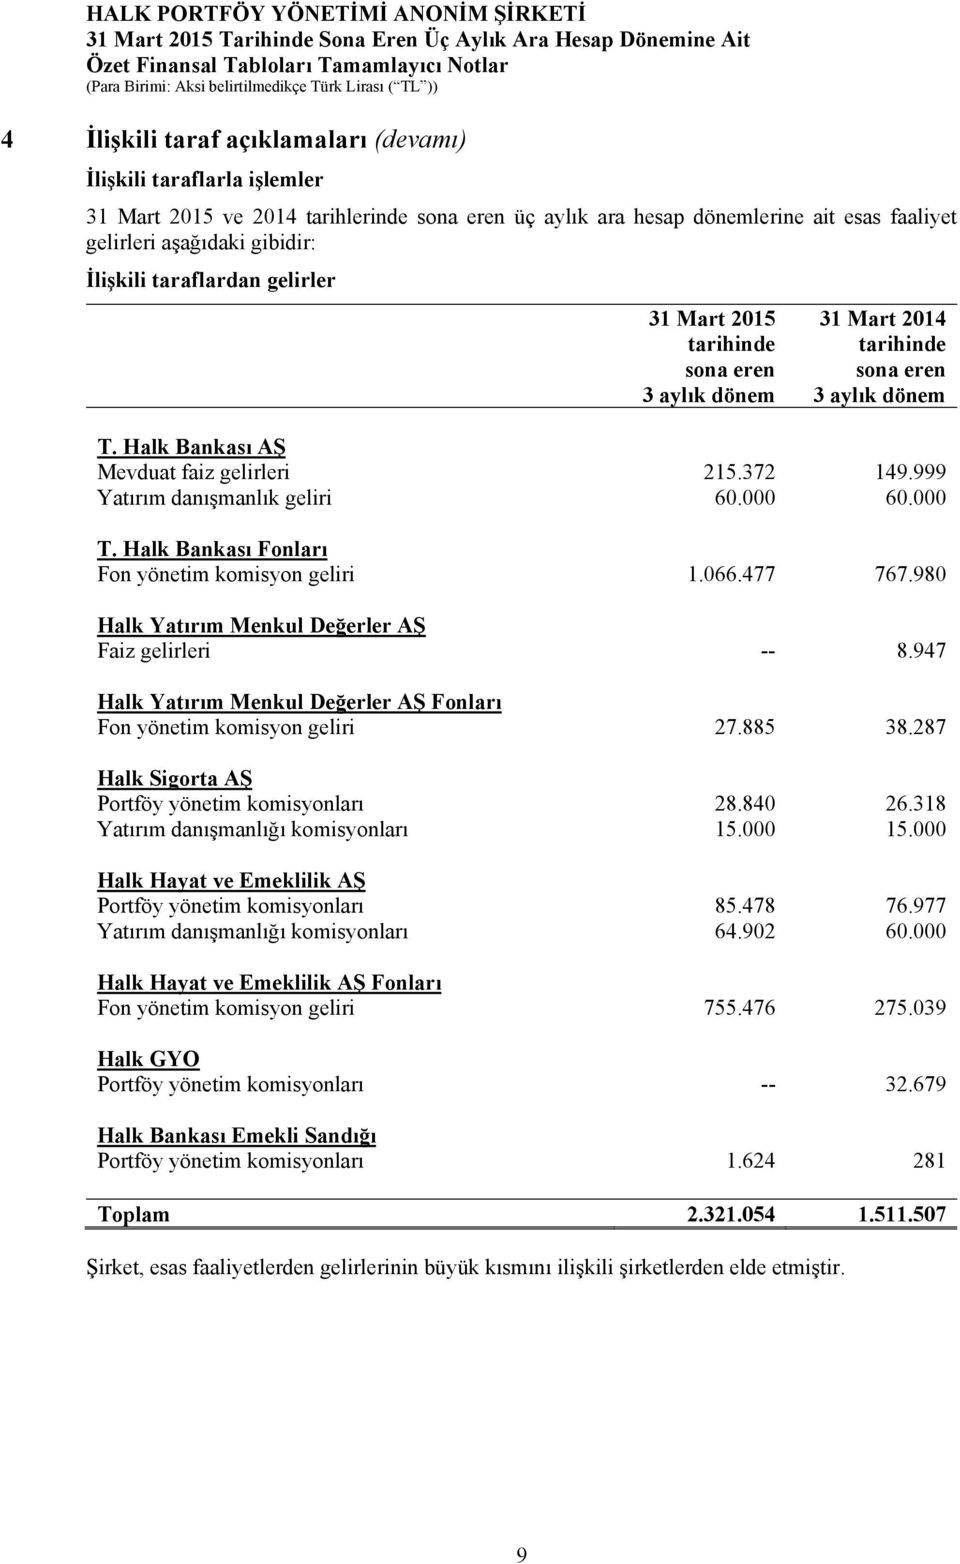 999 Yatırım danışmanlık geliri 60.000 60.000 T. Halk Bankası Fonları Fon yönetim komisyon geliri 1.066.477 767.980 Halk Yatırım Menkul Değerler AŞ Faiz gelirleri -- 8.